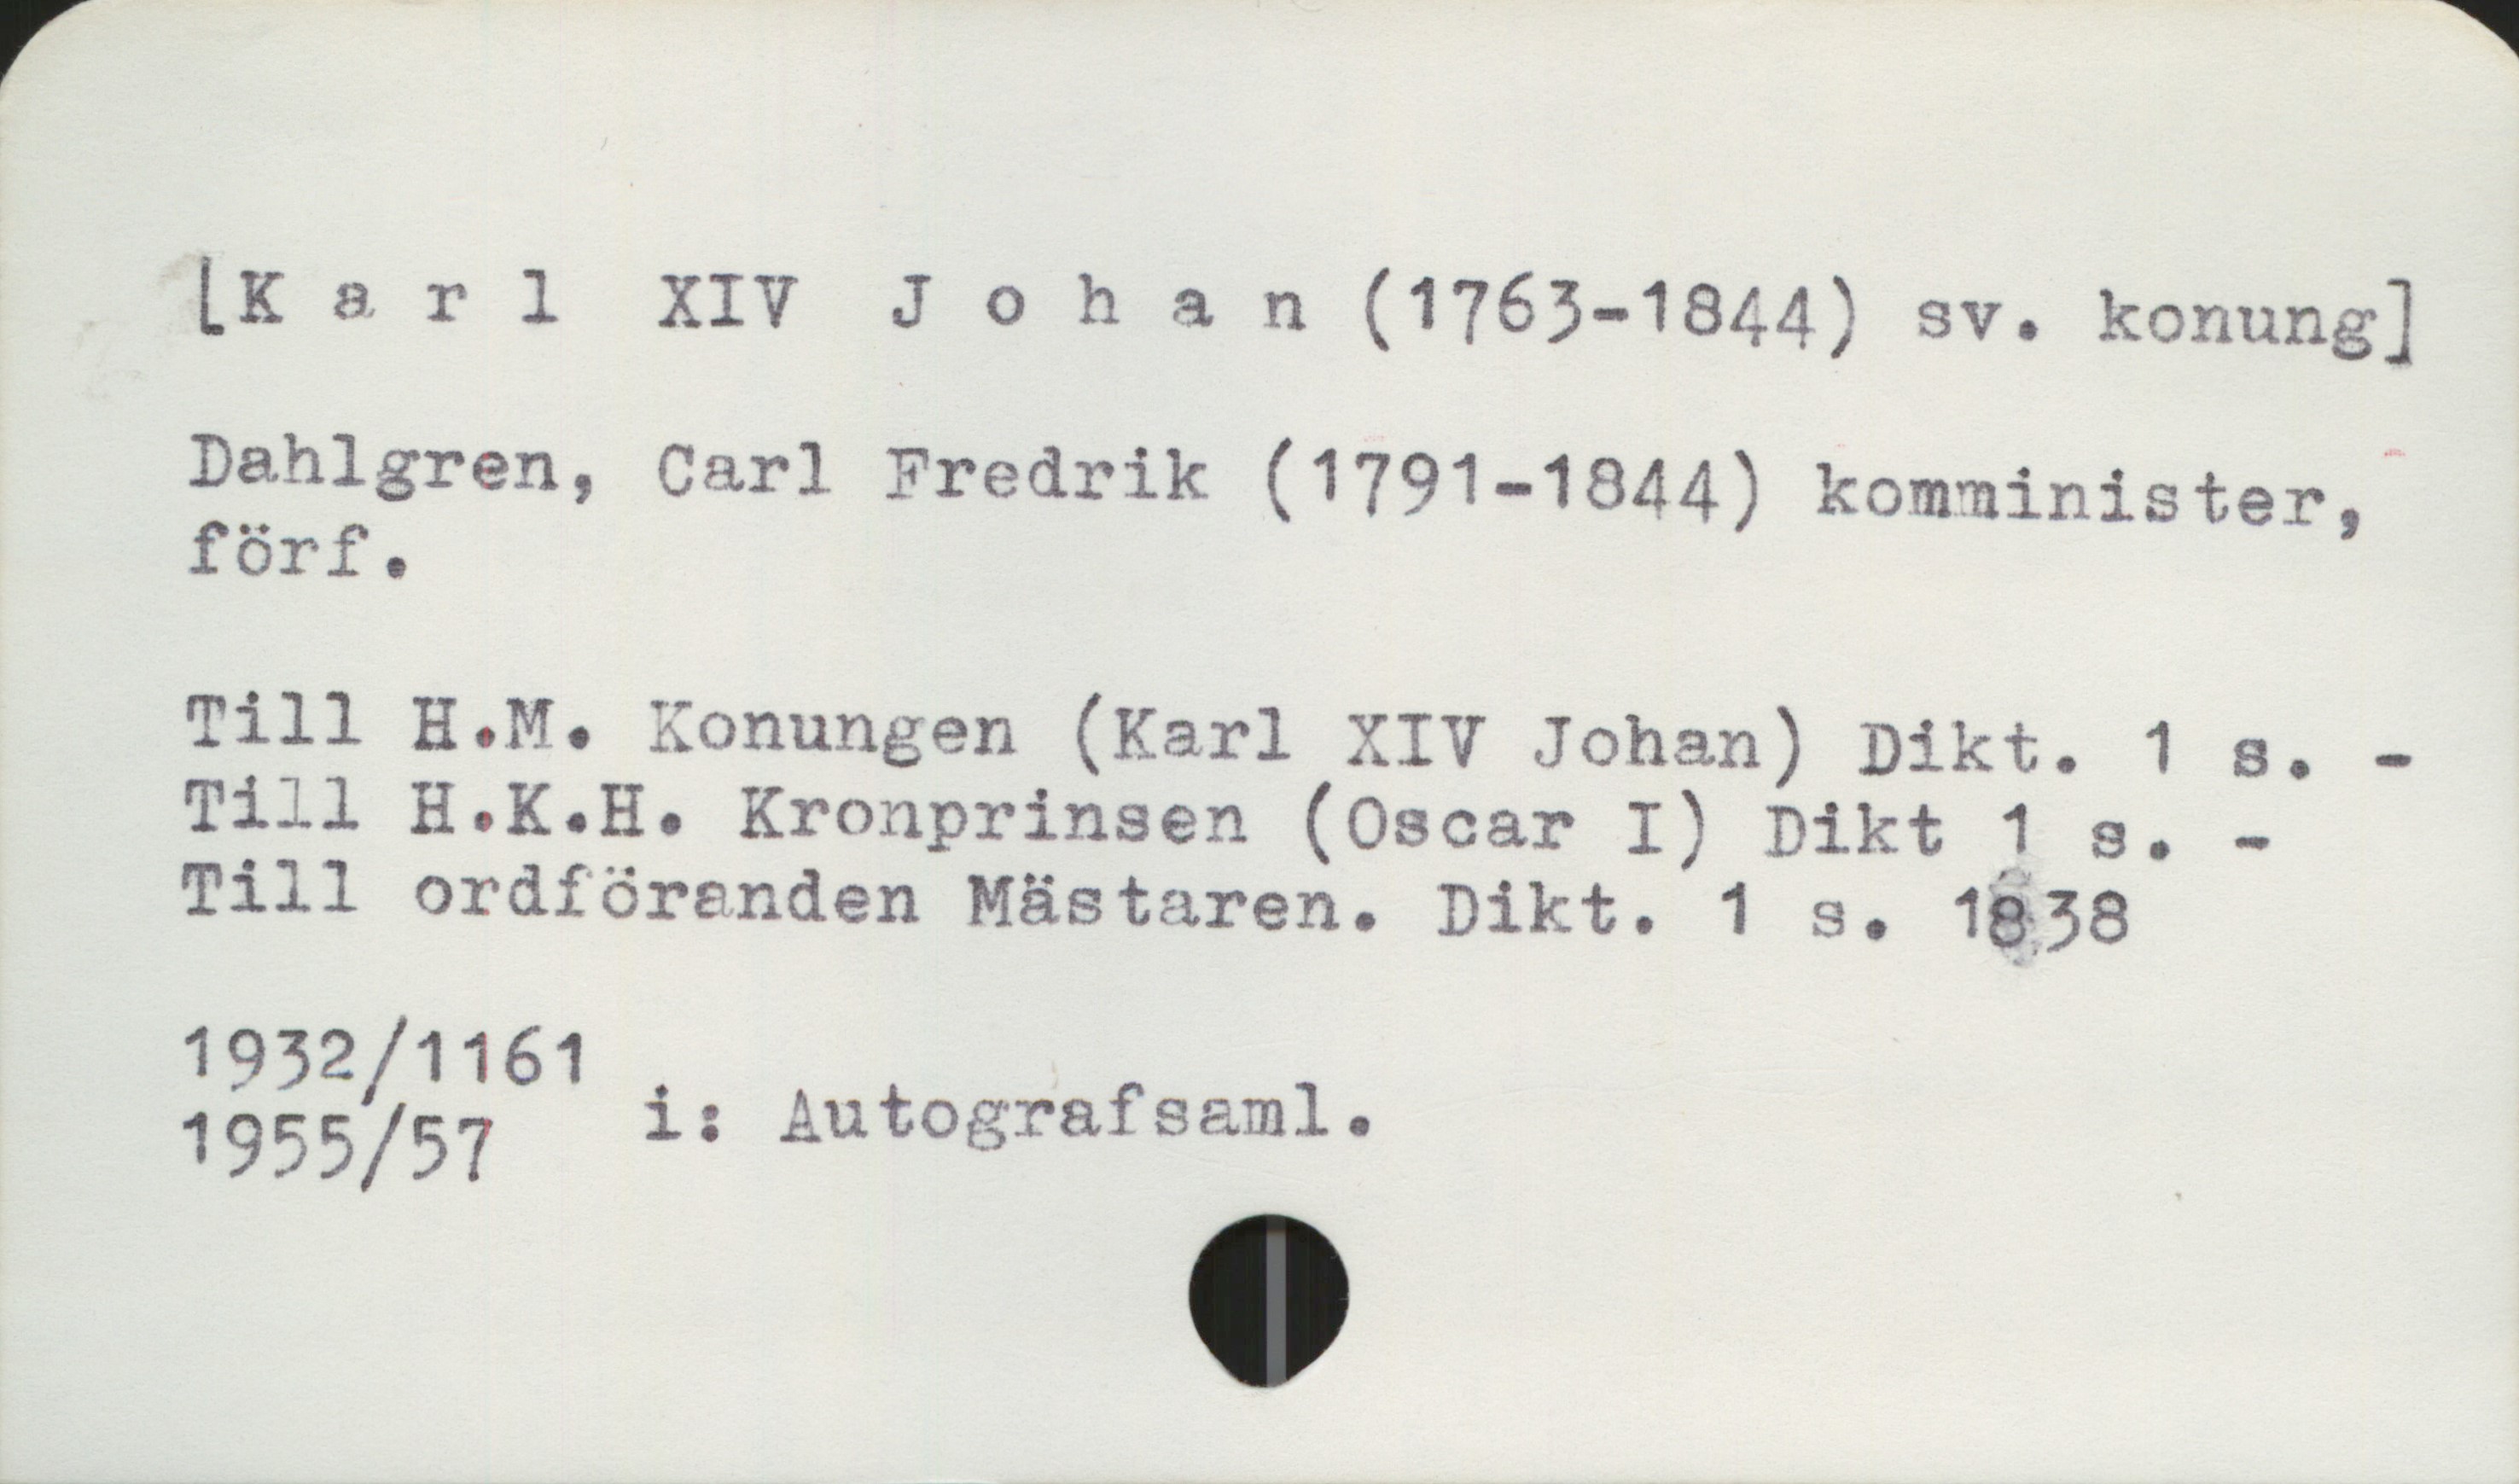  LKarl XIV Johan (1763-1844) sv. konung]
Dahlgren, Carl Fredrik (1791-18 1 i »
Pehle (179 44) komminister,
Till HQM. Konungen (Karl XIV Johan) Dikt. 1 s. -
Till H.K.H. Kronprinsen (Oscar I) Dikt 1 s. -
Till ordföranden Mästaren. Dikt. 1 s. 1838

1932 /1161 i t p

1955/57 ; Autografsaml. ,

